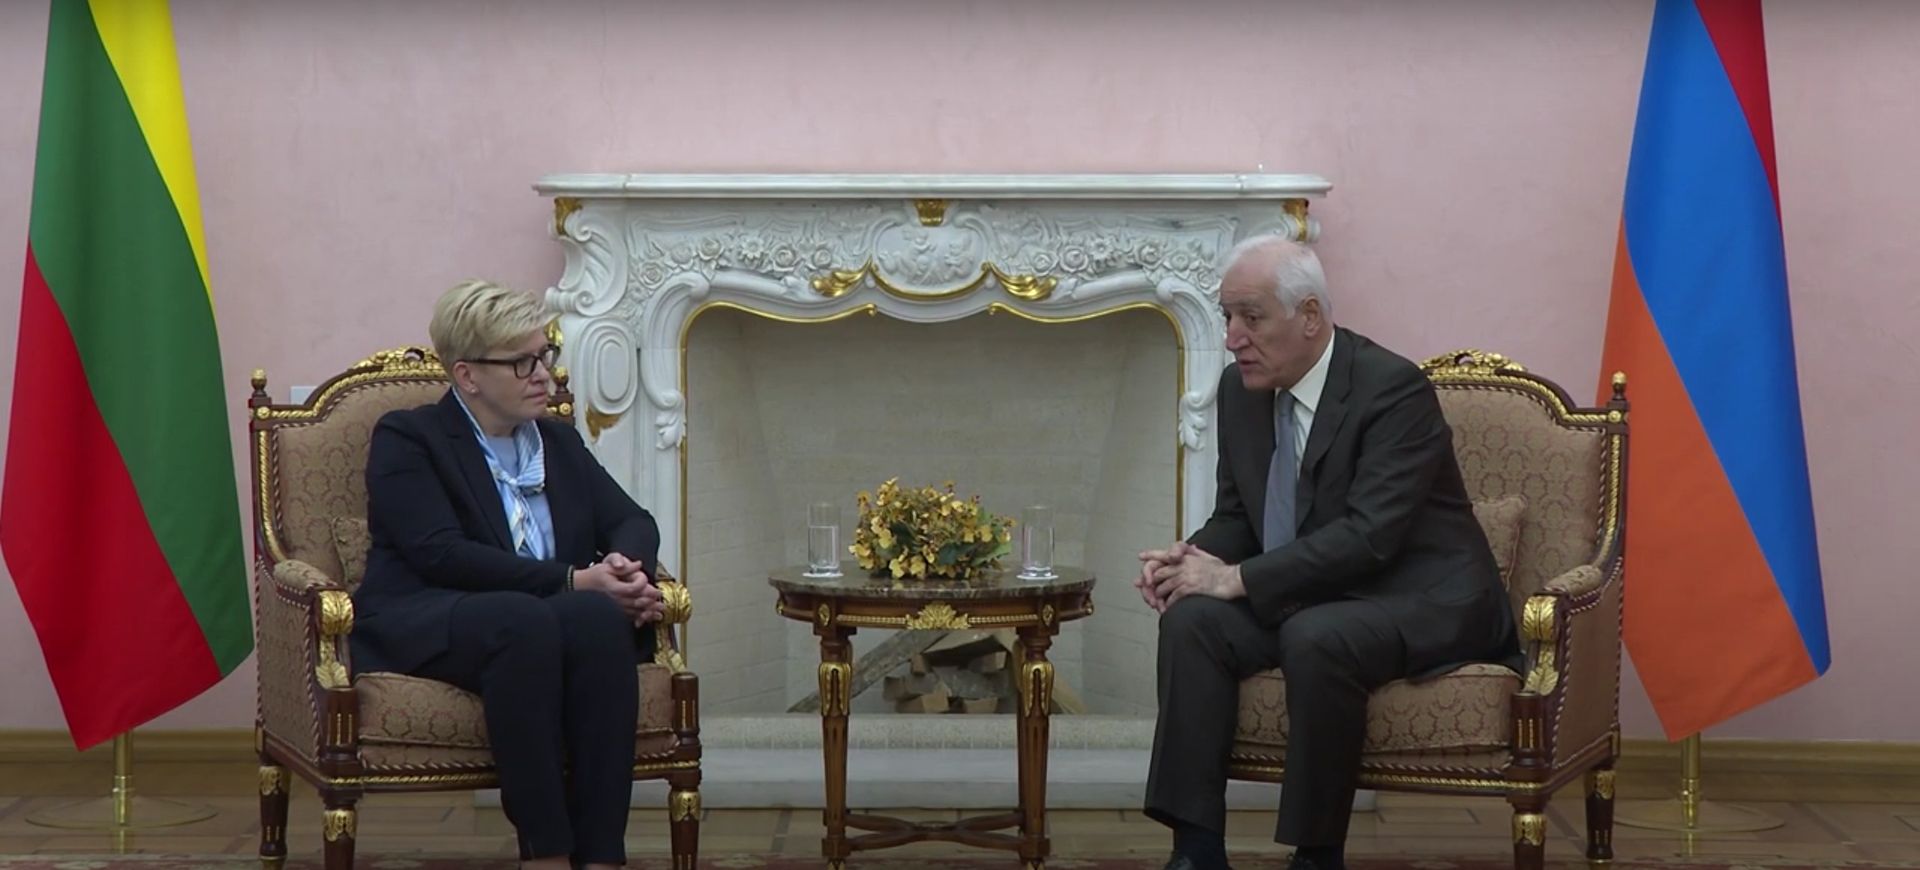 Վահագն Խաչատուրյանը նախագահական նստավայրում հանդիպել է Լիտվայի Հանրապետության վարչապետի հետ